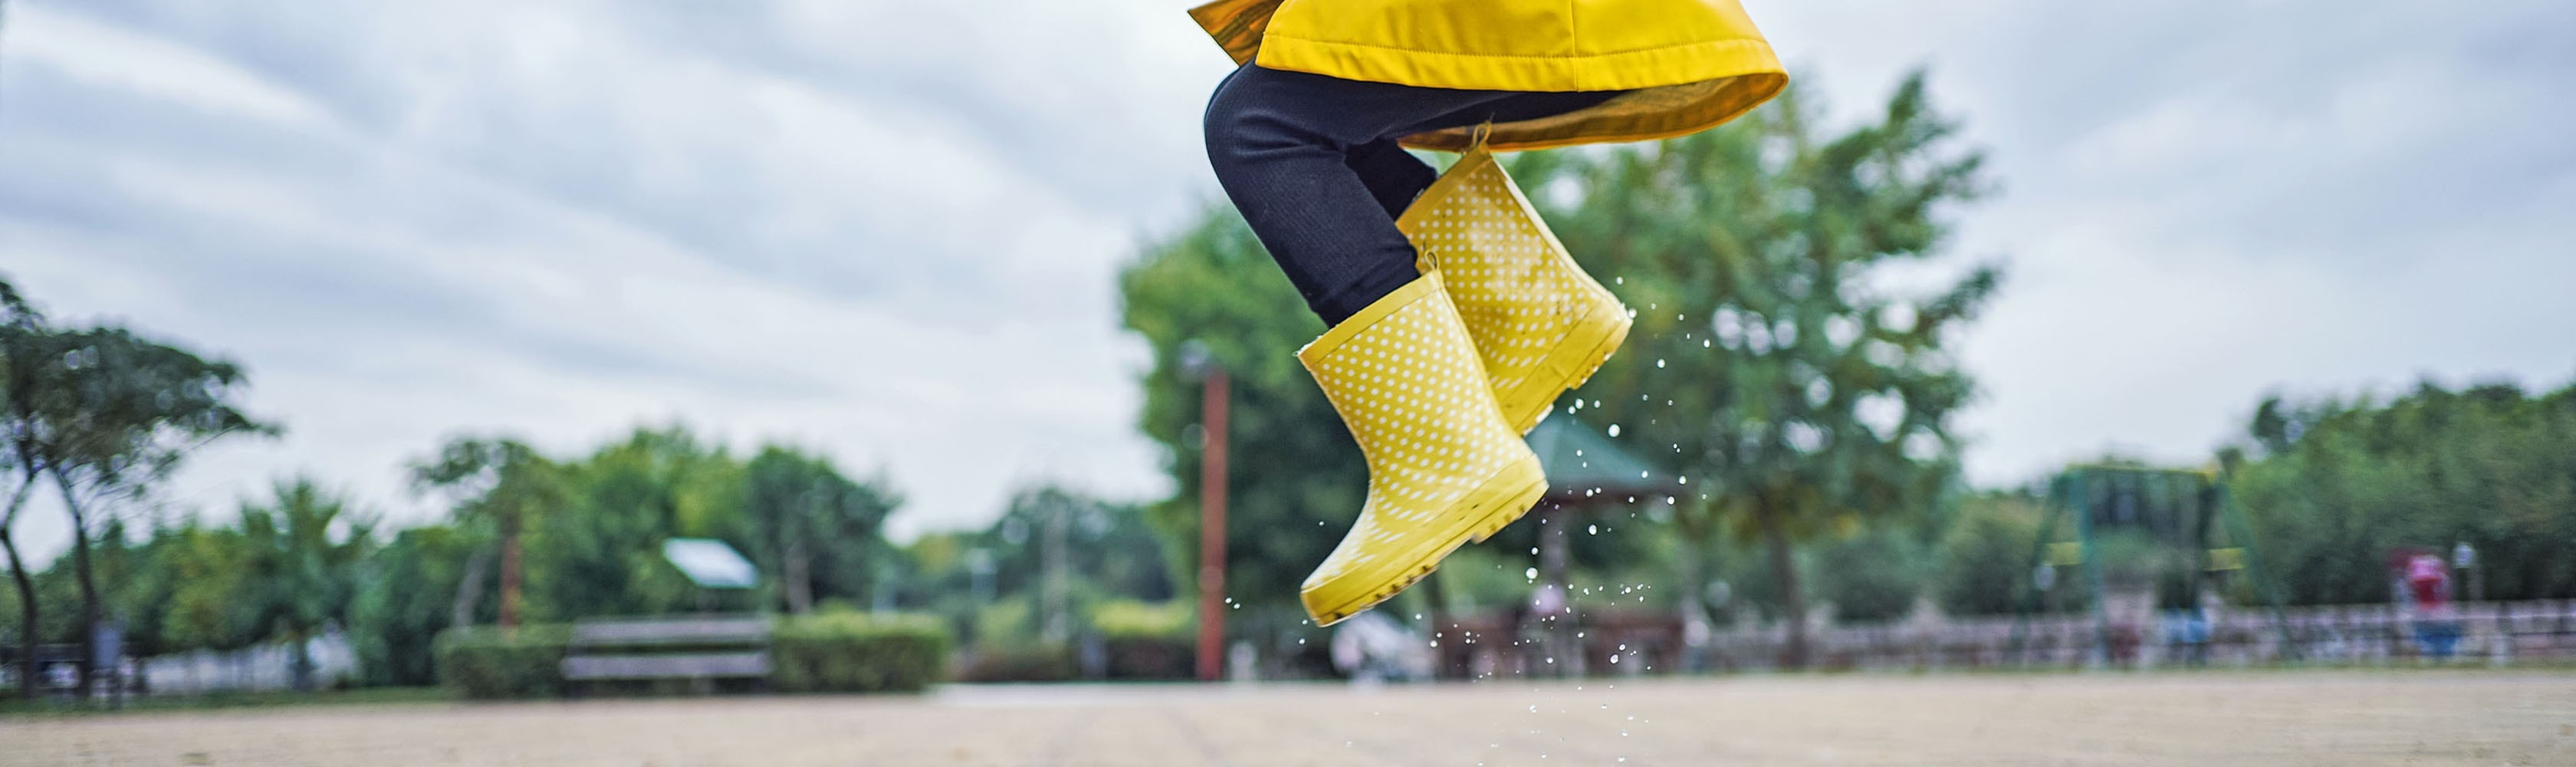 Ein Kind hüpft begeistert in eine Regenpfütze – komplett stressfrei und unbeschwert.